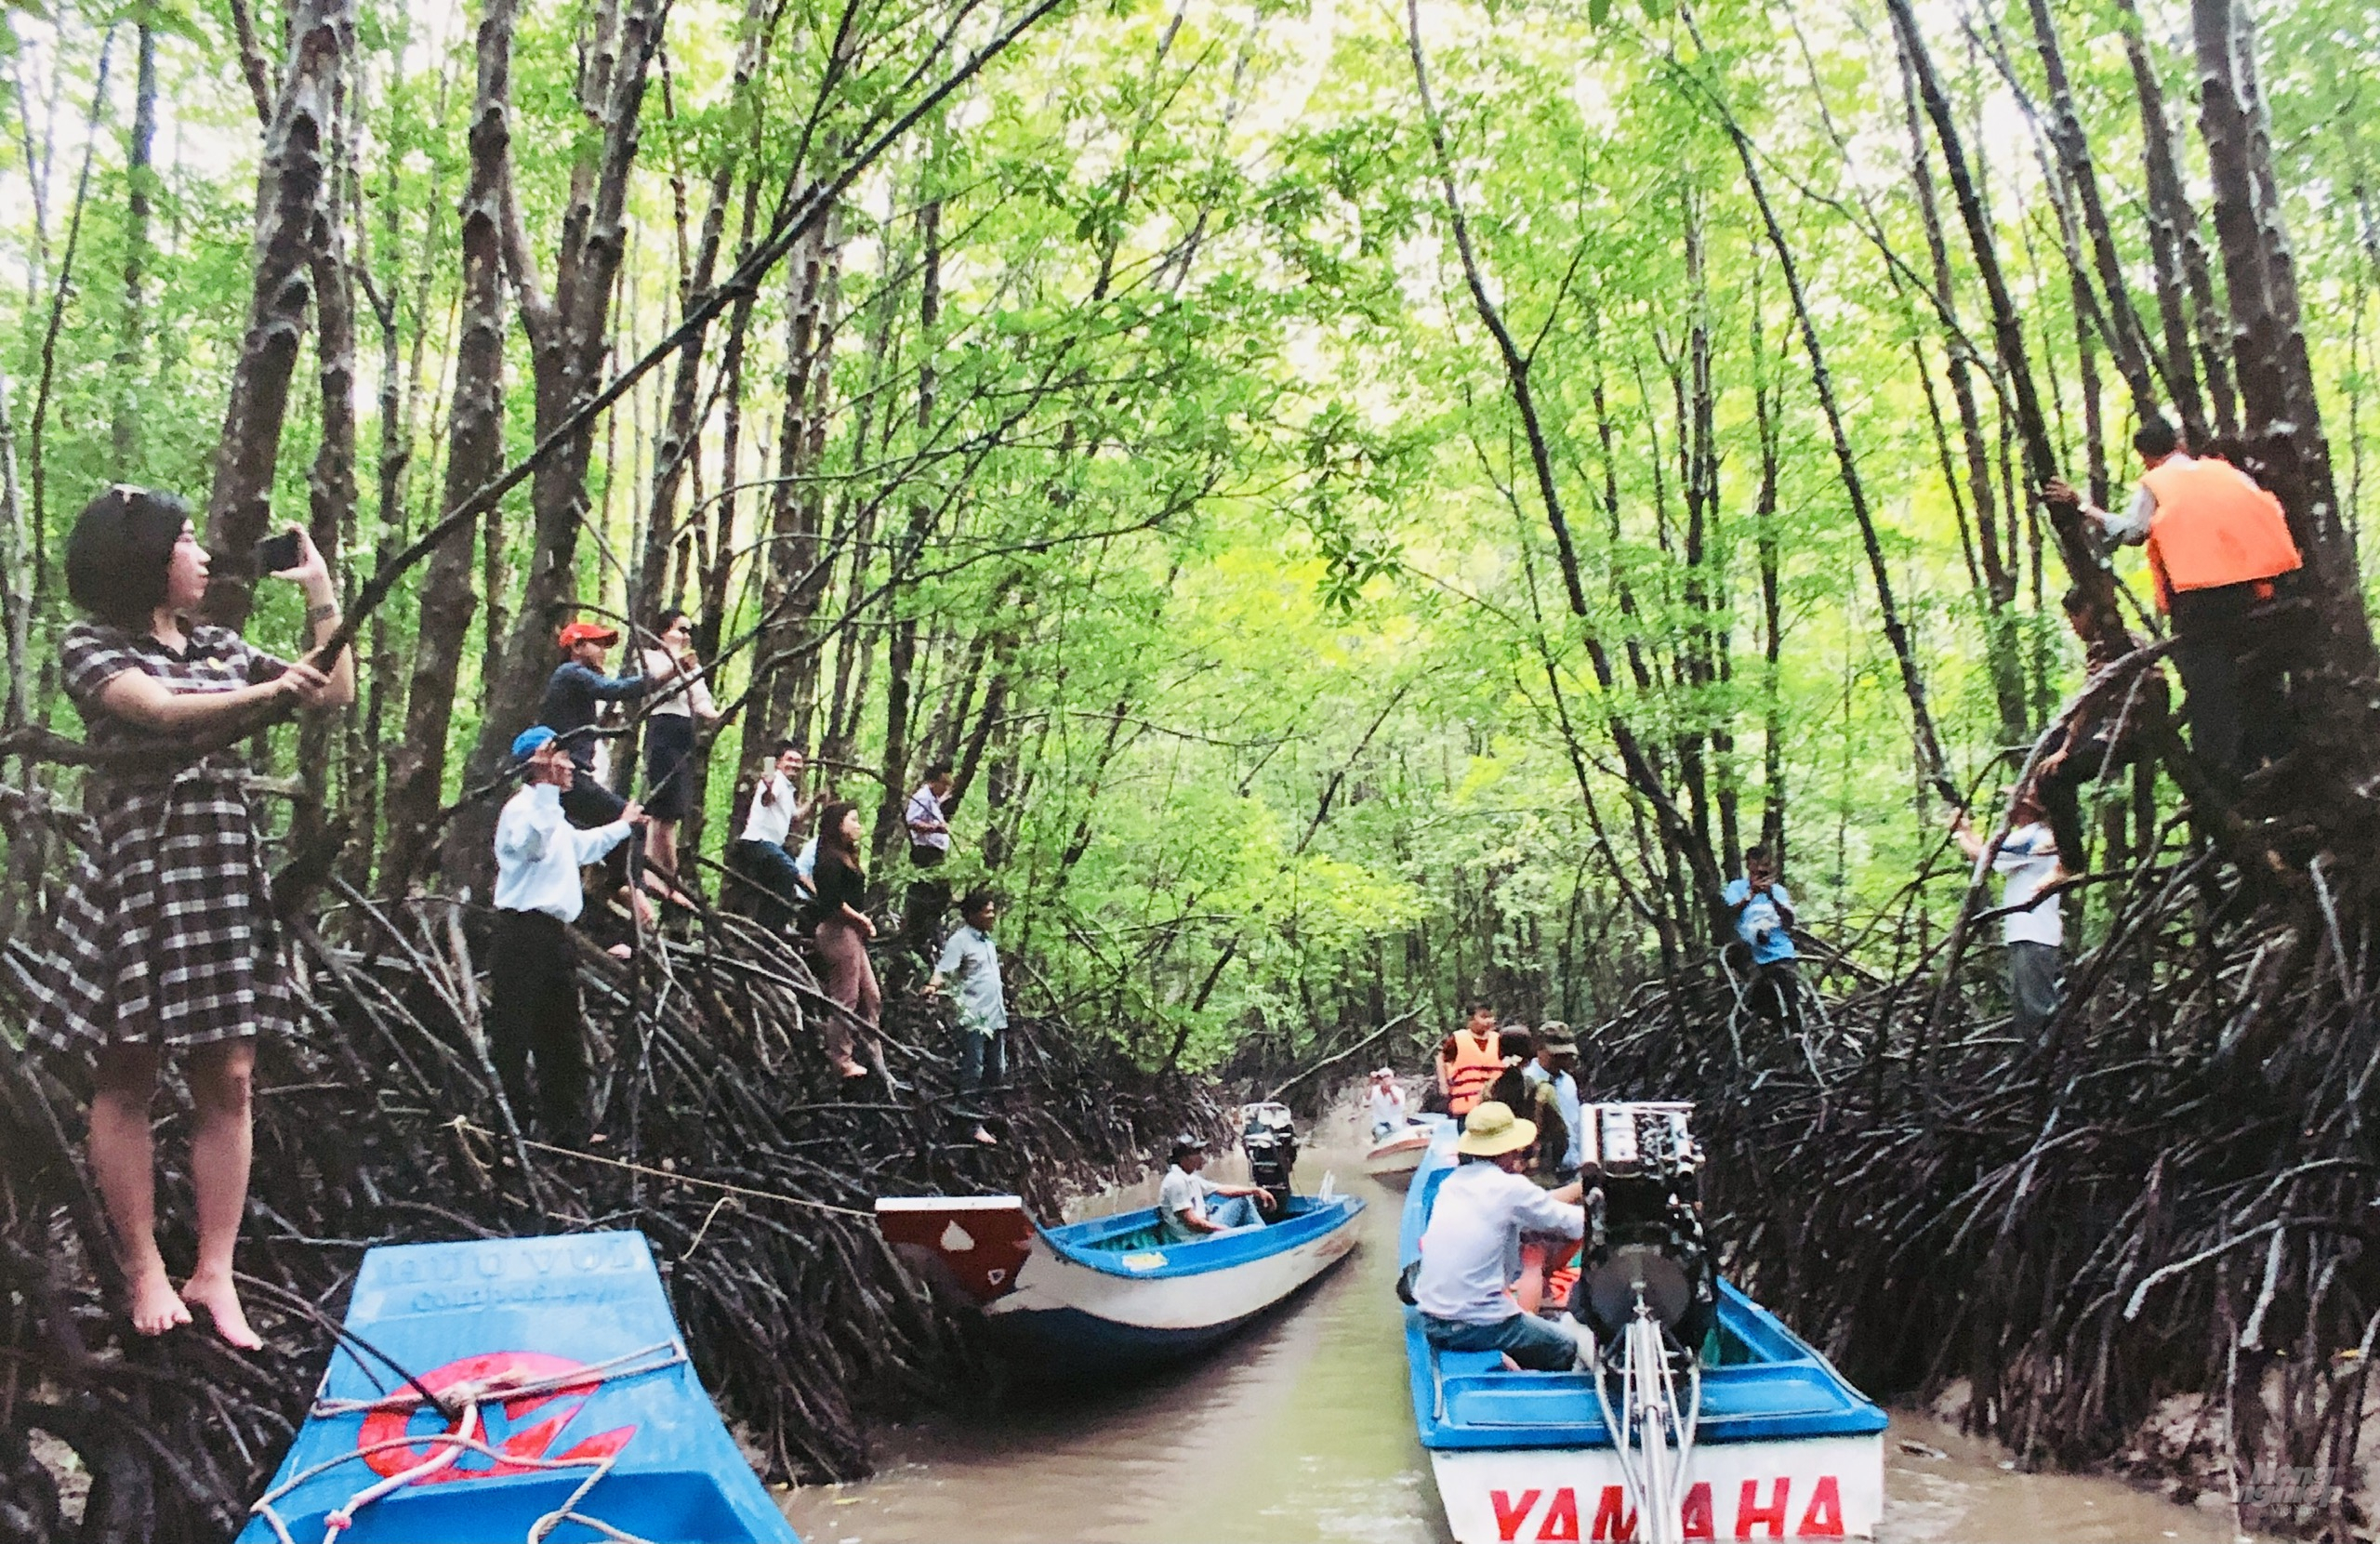 Tuyến du lịch trải nghiệm tham quan xuyên rừng hút khách tại Đất Mũi. Ảnh: Trần Trung.